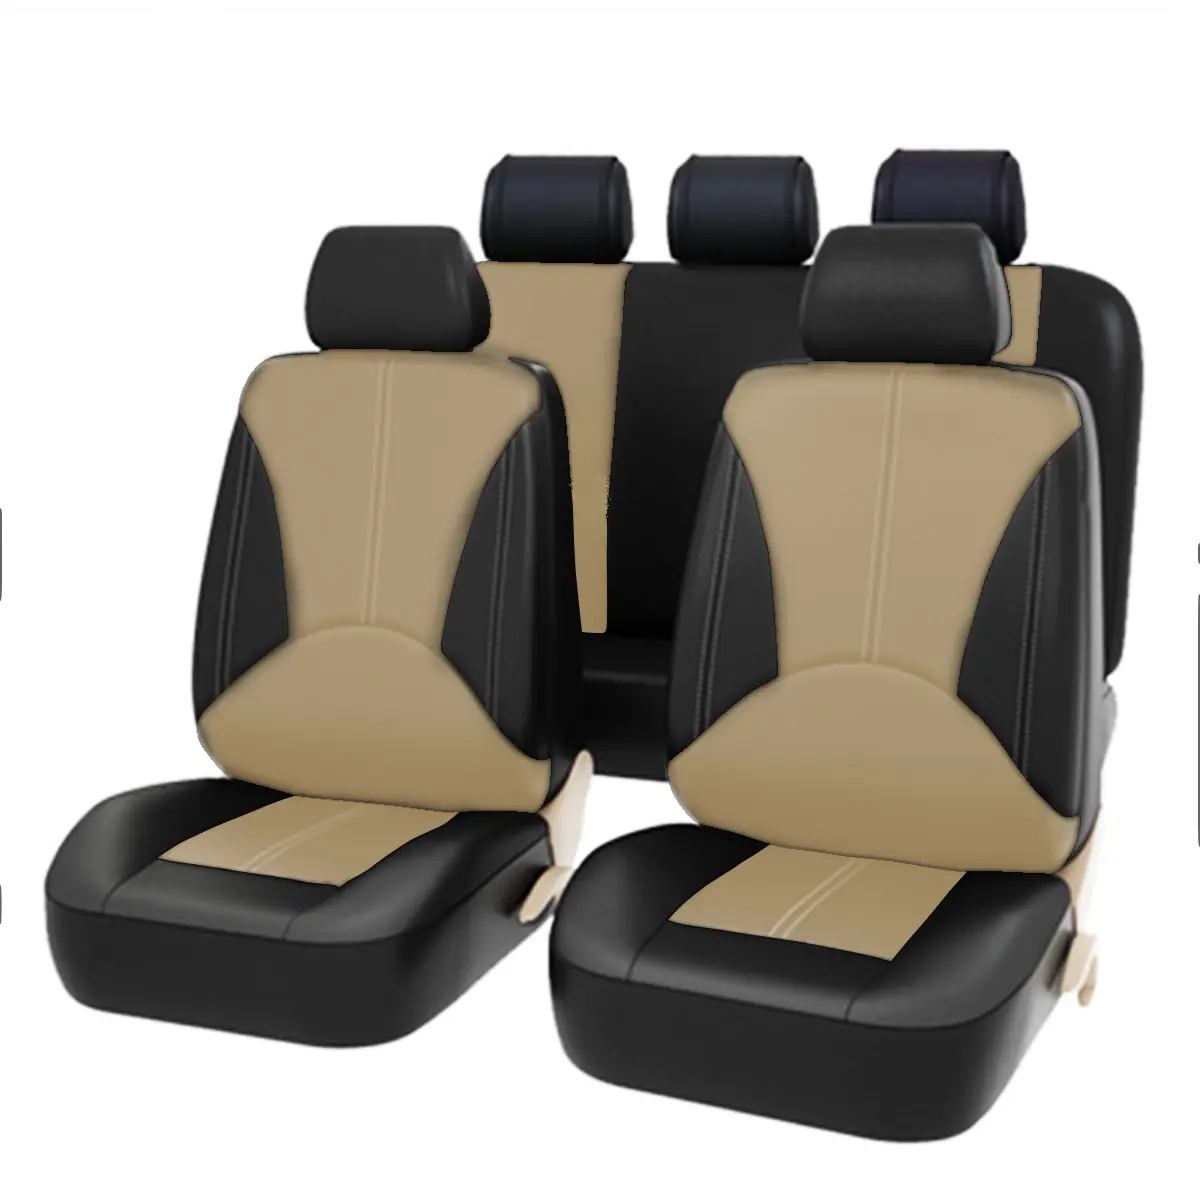 Rownfur Hoge Kwaliteit 3D Vier Seizoen Mode Universele Pu Leer Voor Autostoel Cover Voor Autostoel Beschermen Voor audi